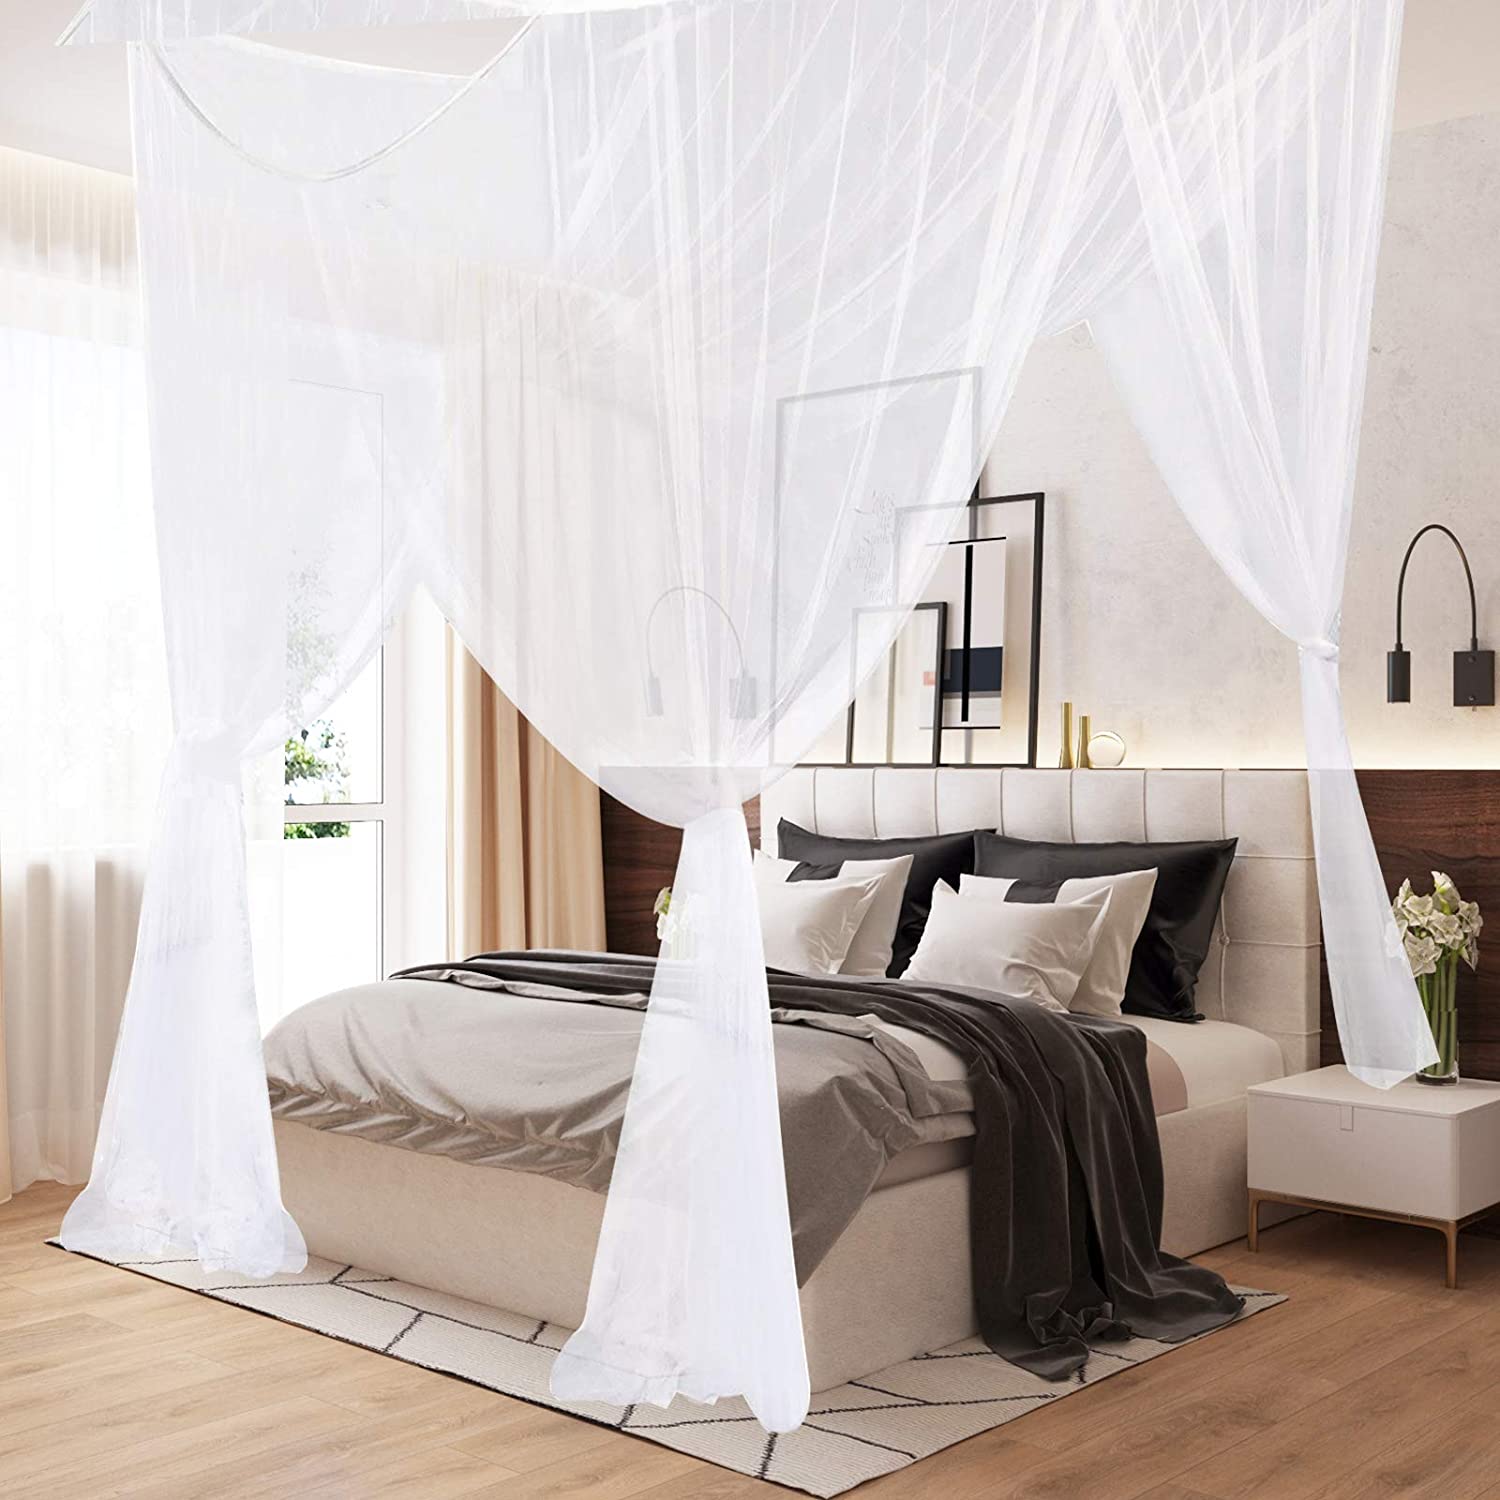 Canopy curtain drapes